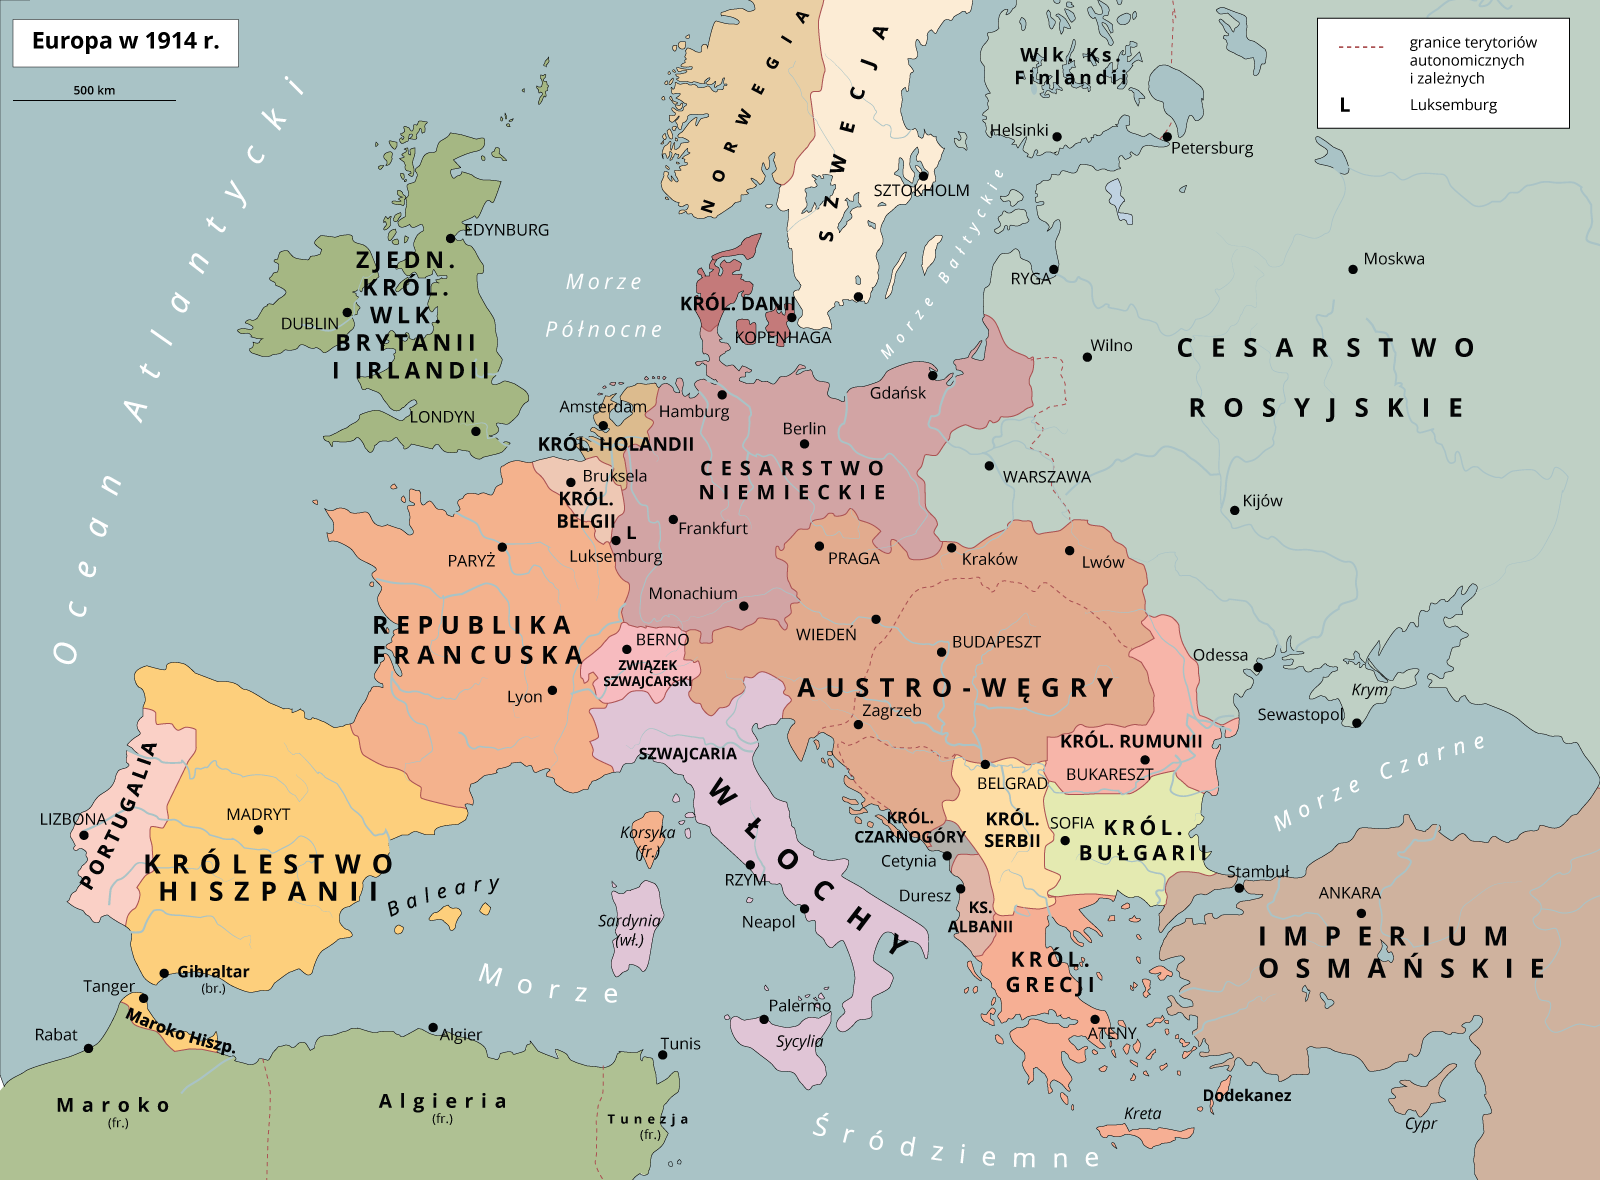 Mapa przedstawia Europę w 1914 roku. Na zachodzie są następujące państwa: Portugalia, Królestwo Hiszpanii, Republika Francuska, Królestwo Belgii, Królestwo Holandii, Luksemburg, Związek Szwajcarski, Zjednoczone Królestwo Wielkiej Brytanii i Irlandii. W części środkowej i środkowo-wschodniej są następujące państwa: Cesarstwo Niemieckie i Austro-Węgry. W części wschodniej jest Cesarstwo Rosyjskie. W części północnej są Królestwo Danii, Norwegia, Szwecja i Wielkie Księstwo Finlandii. W części południowo-wschodniej i południowej są następujące kraje: Włochy, Królestwo Rumunii, Królestwo Serbii, Królestwo Bułgarii, Księstwo Albanii, Królestwo Czarnogóry, Królestwo Grecji i Imperium Osmańskie.